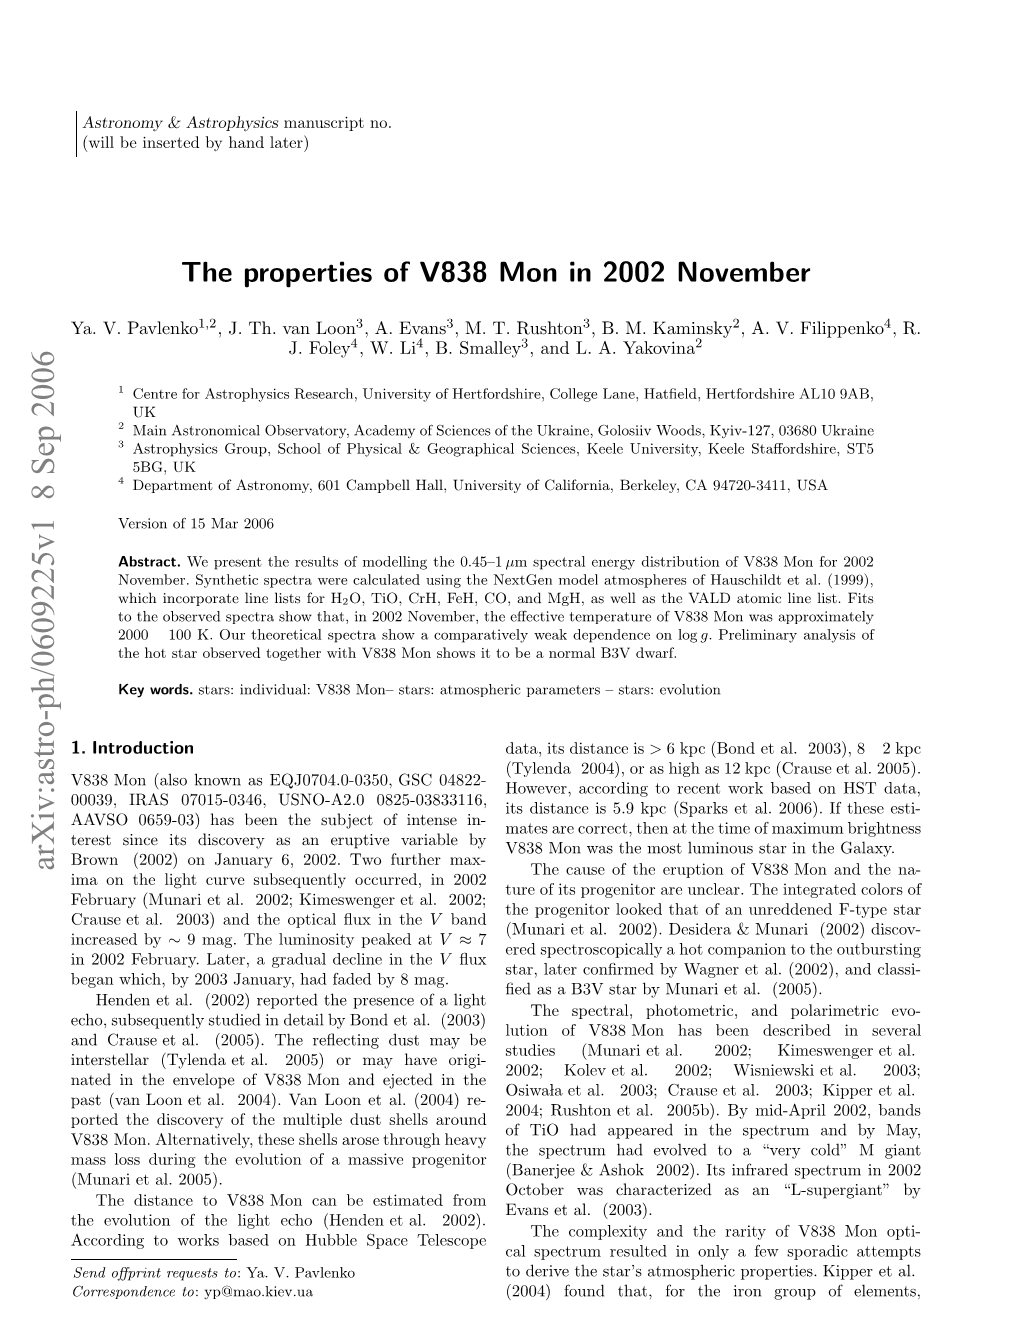 The Properties of V838 Mon in 2002 November